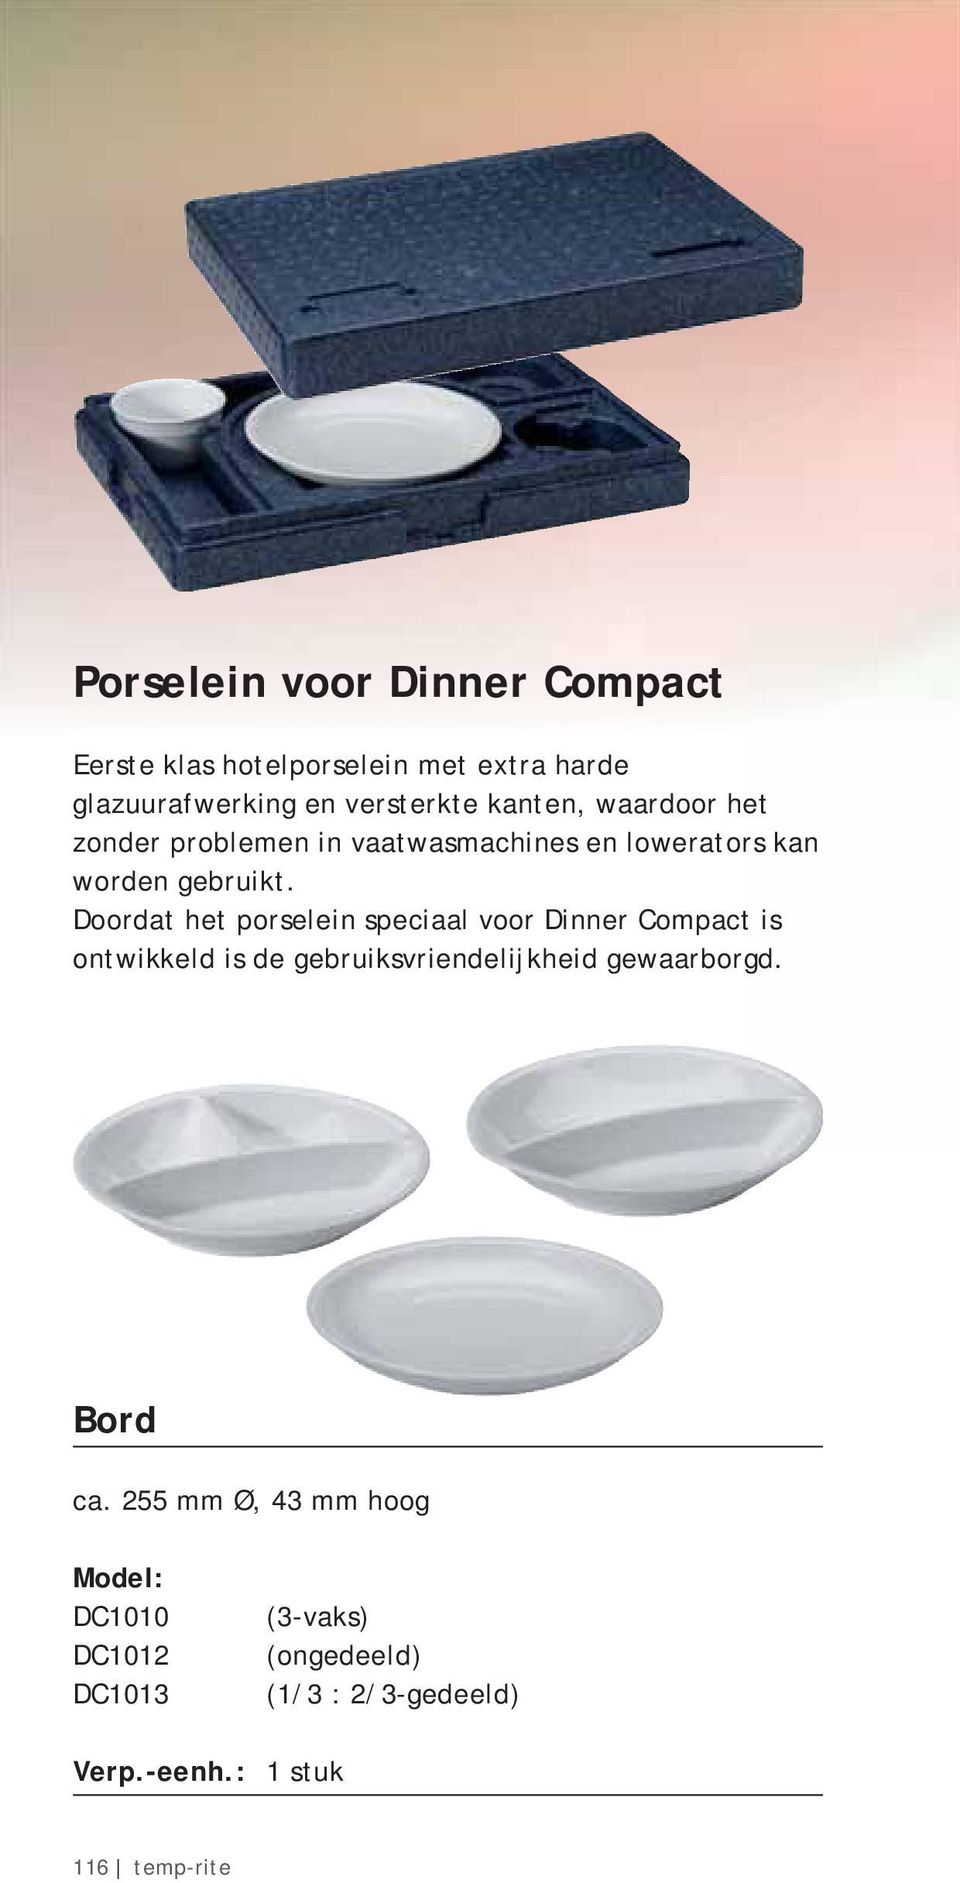 Doordat het porselein speciaal voor Dinner Compact is ontwikkeld is de gebruiksvriendelijkheid